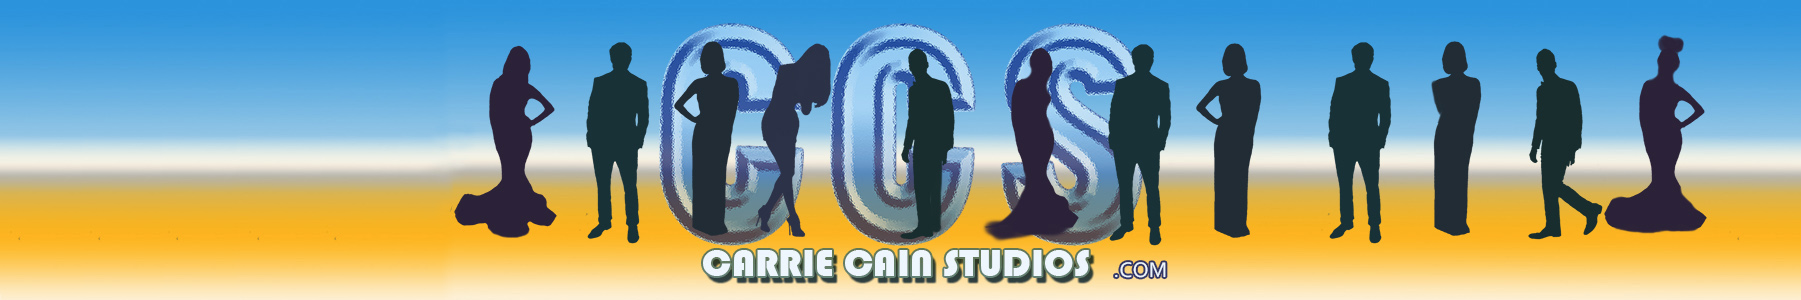 Carrie Cain Studios